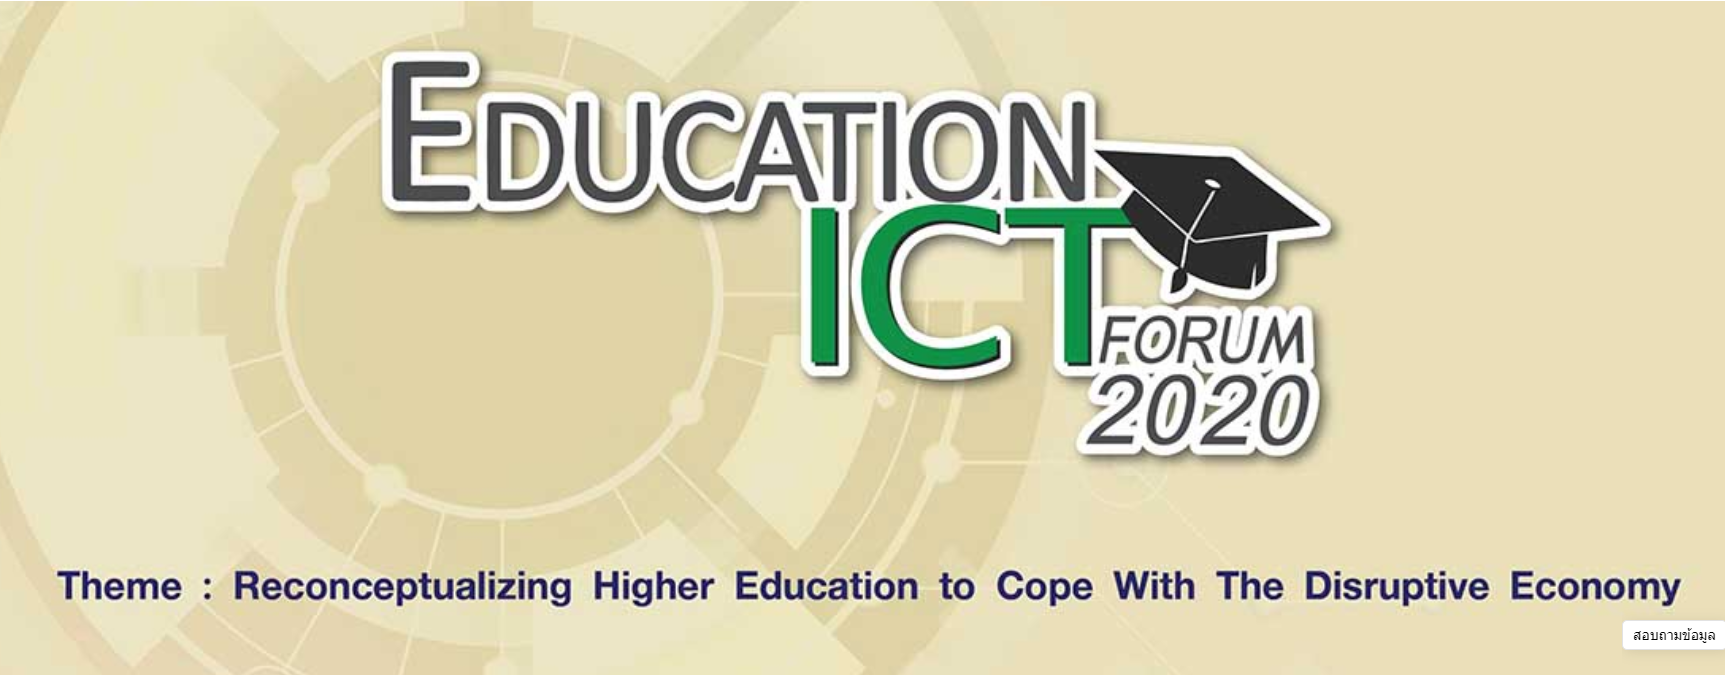 Education ICT Forum 2020